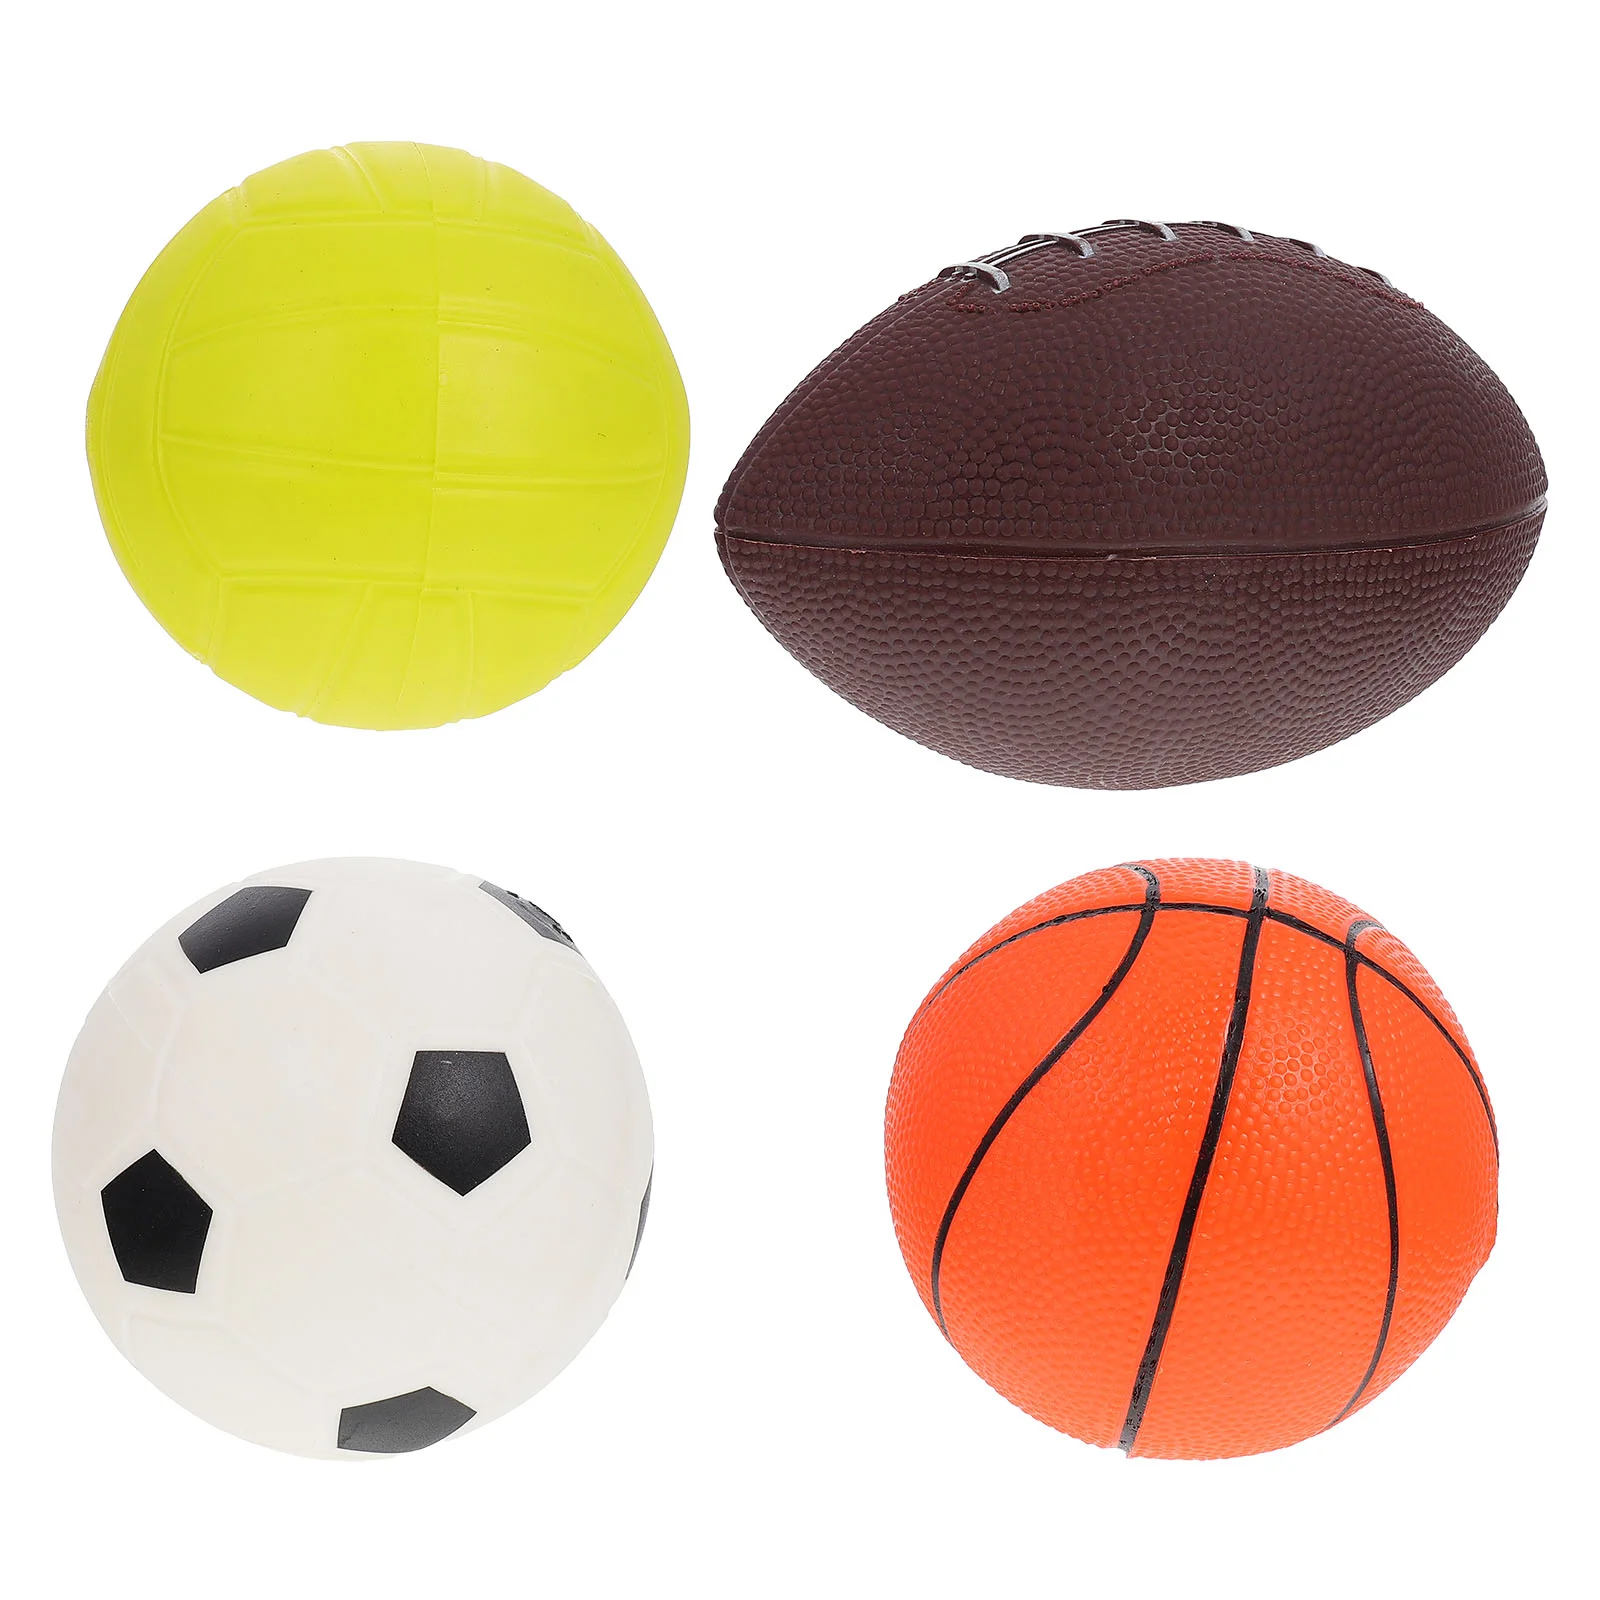 

Надувные мячи для детей, малышей, маленький футбол, баскетбол, регби, игровая площадка, игровой набор из ПВХ